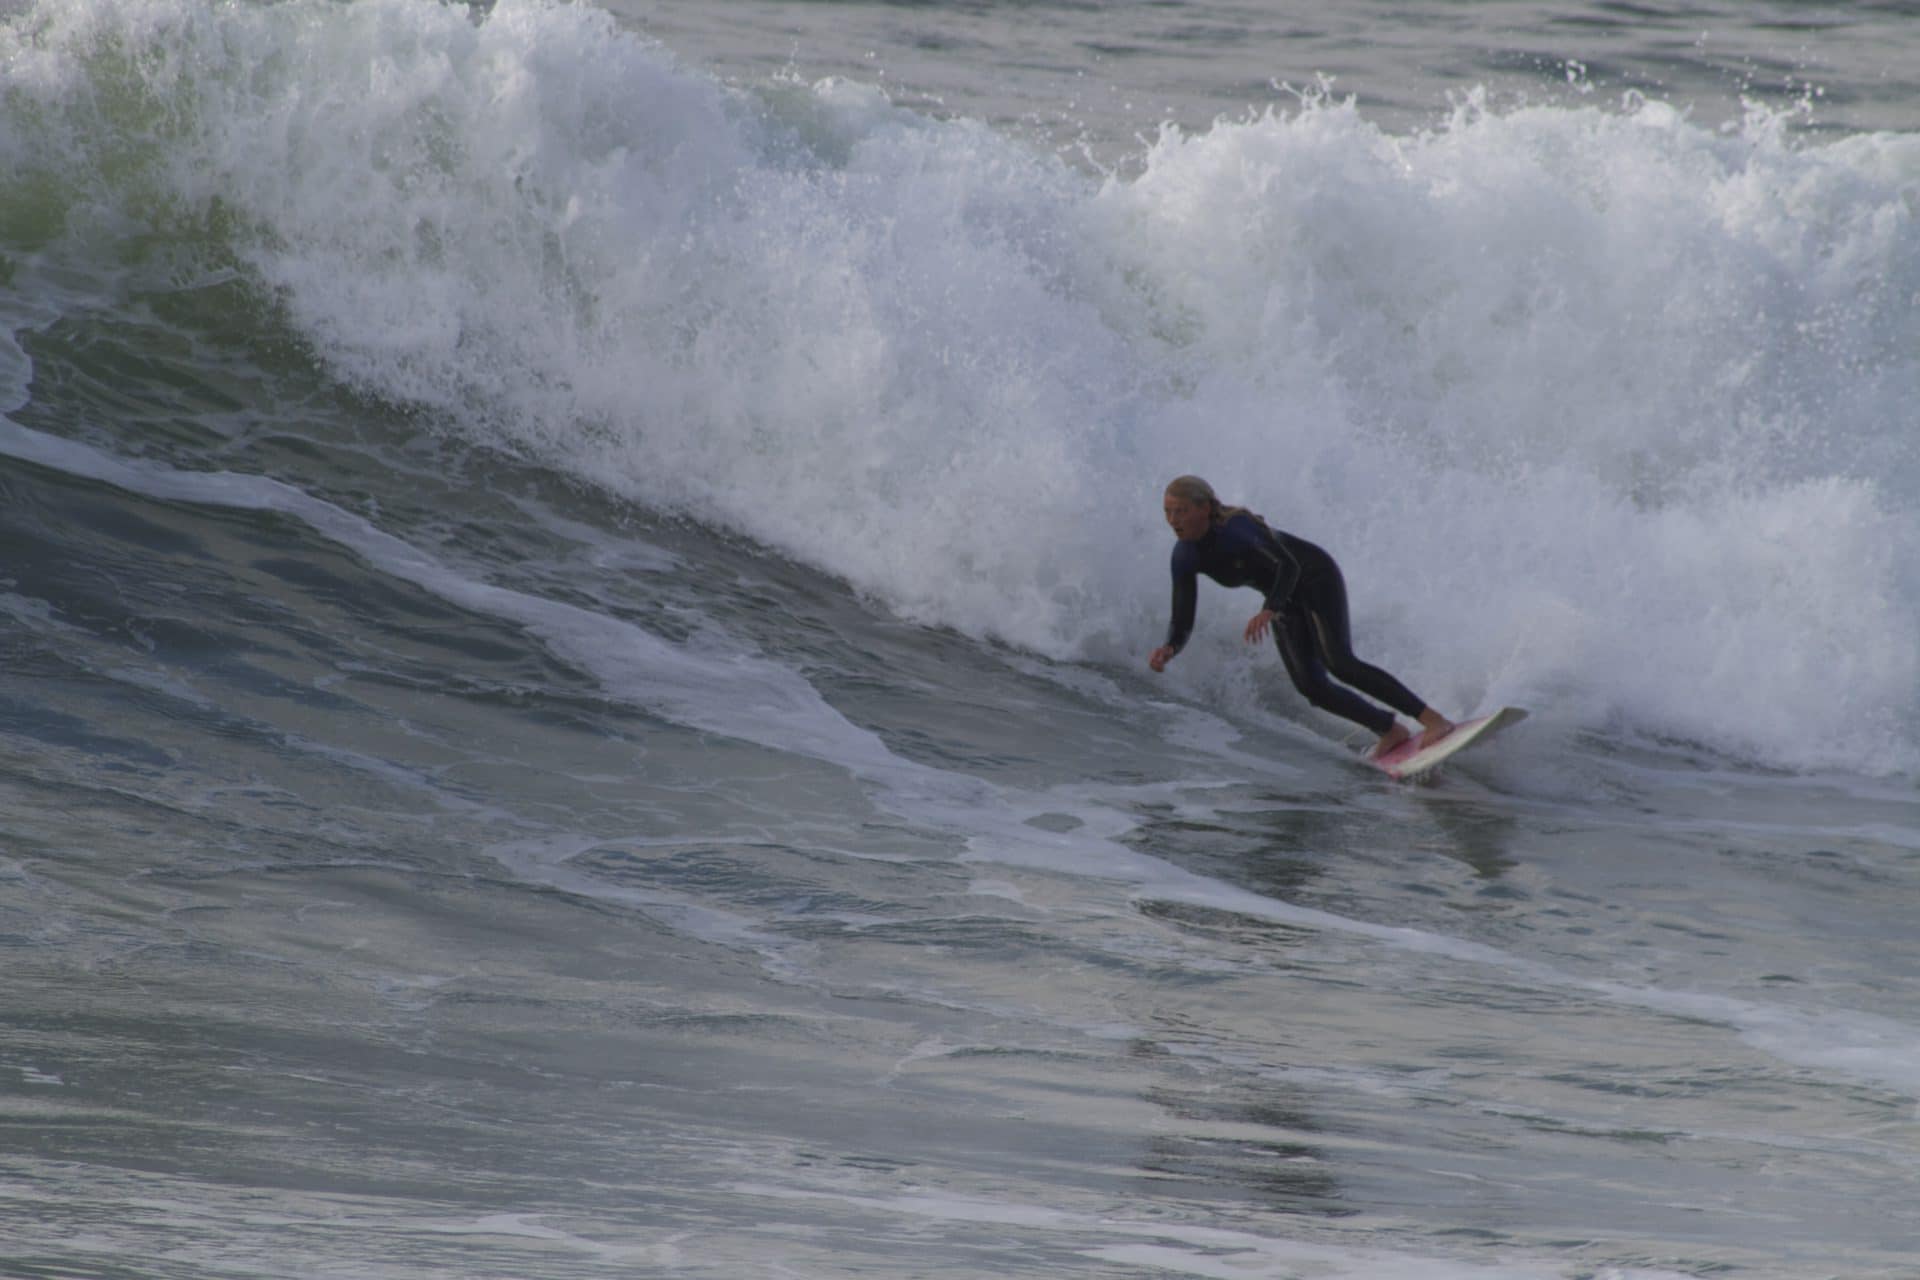 Fra hestejente til bølgerider og surfer gjennom studiene i Portugal